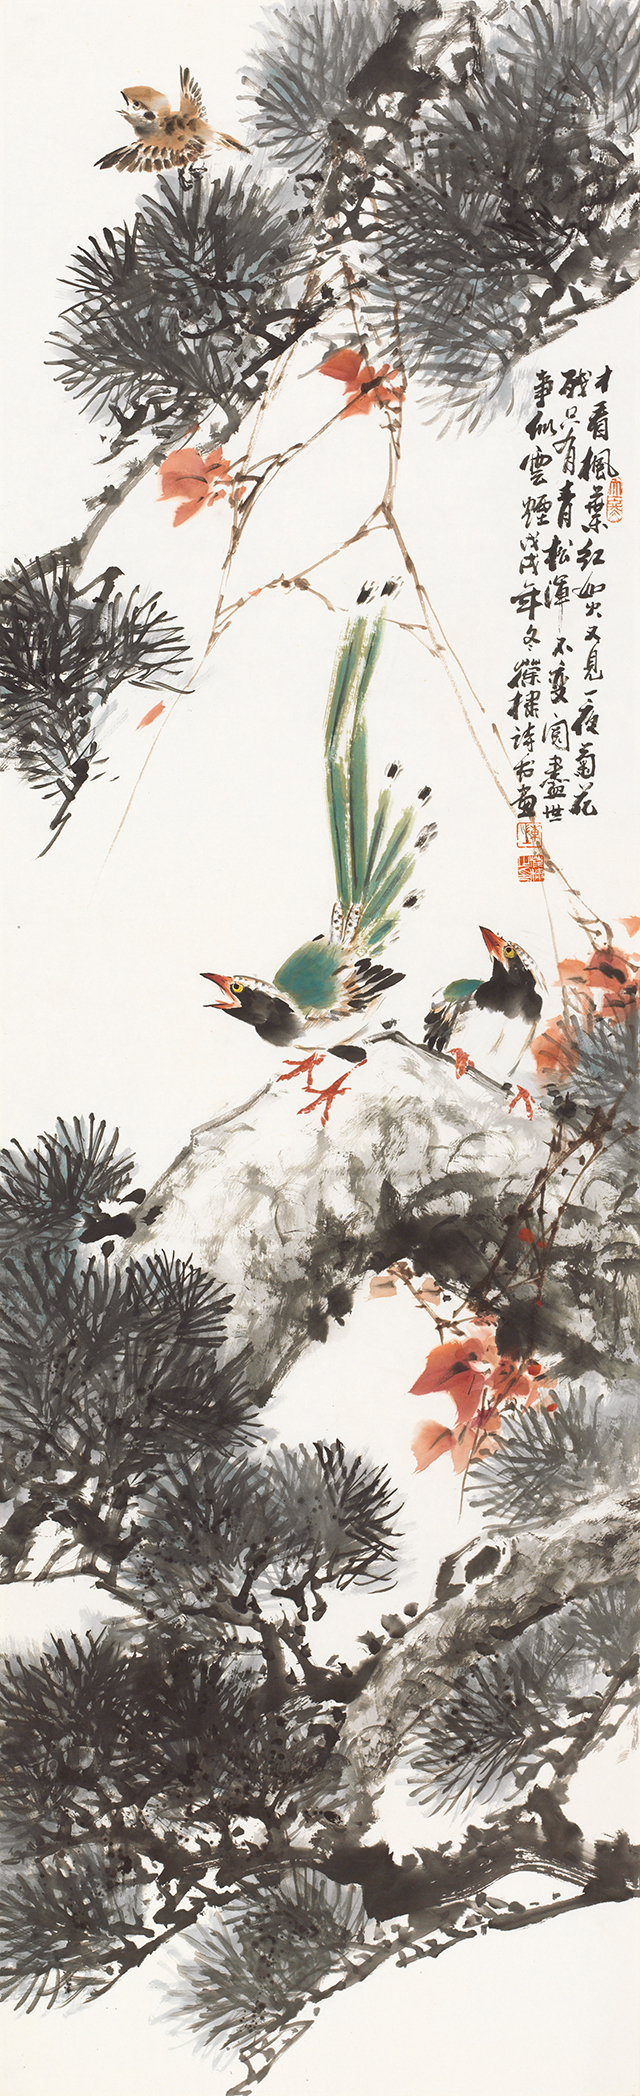 二十四节气花鸟画—19《立冬》